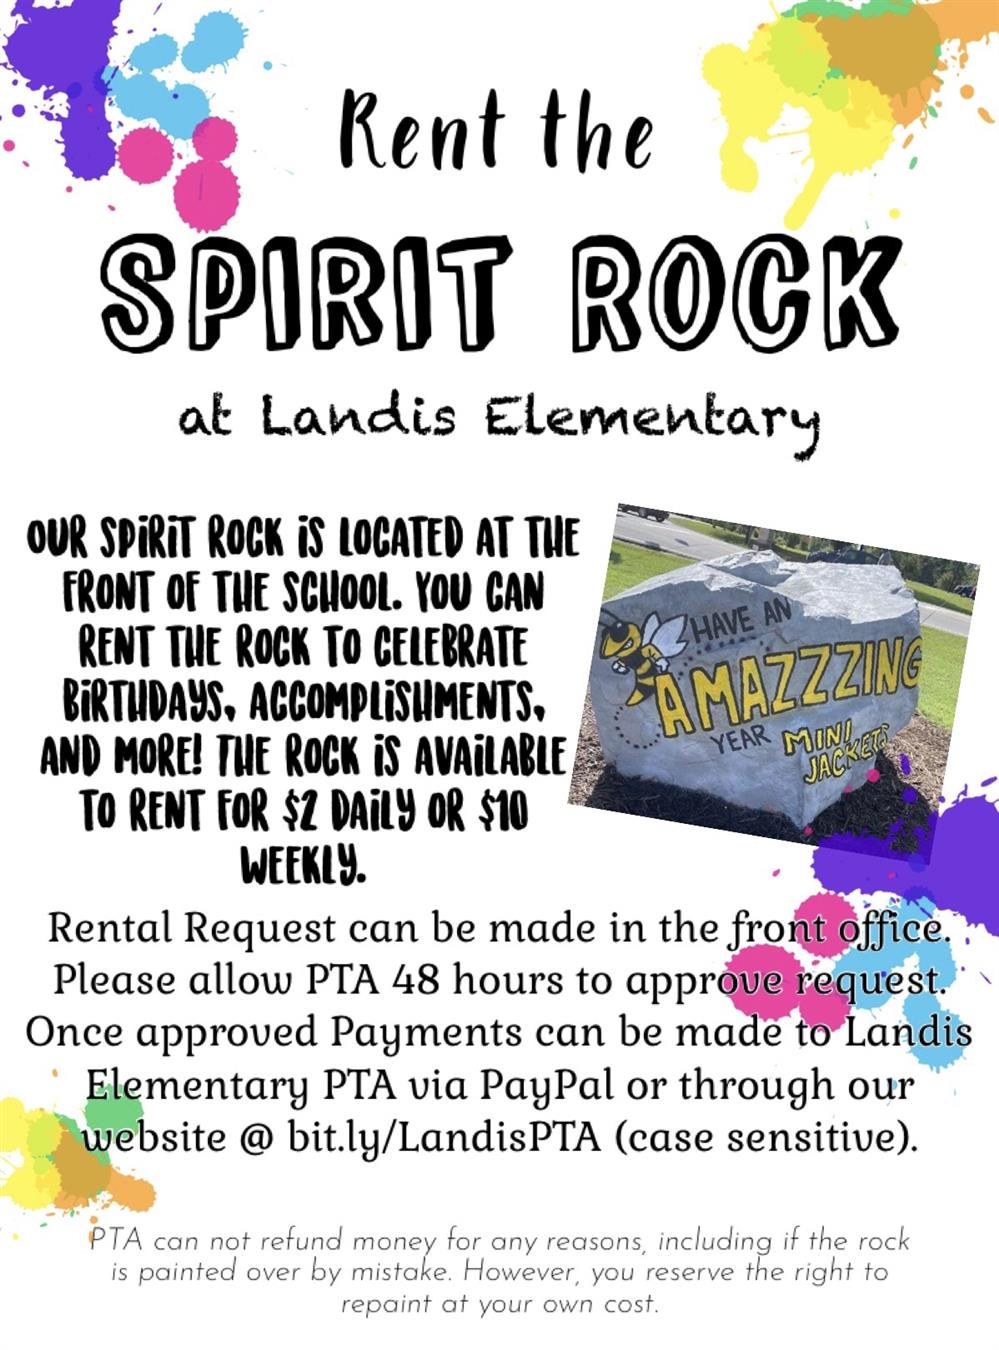  Landis Elementary Spirit Rock